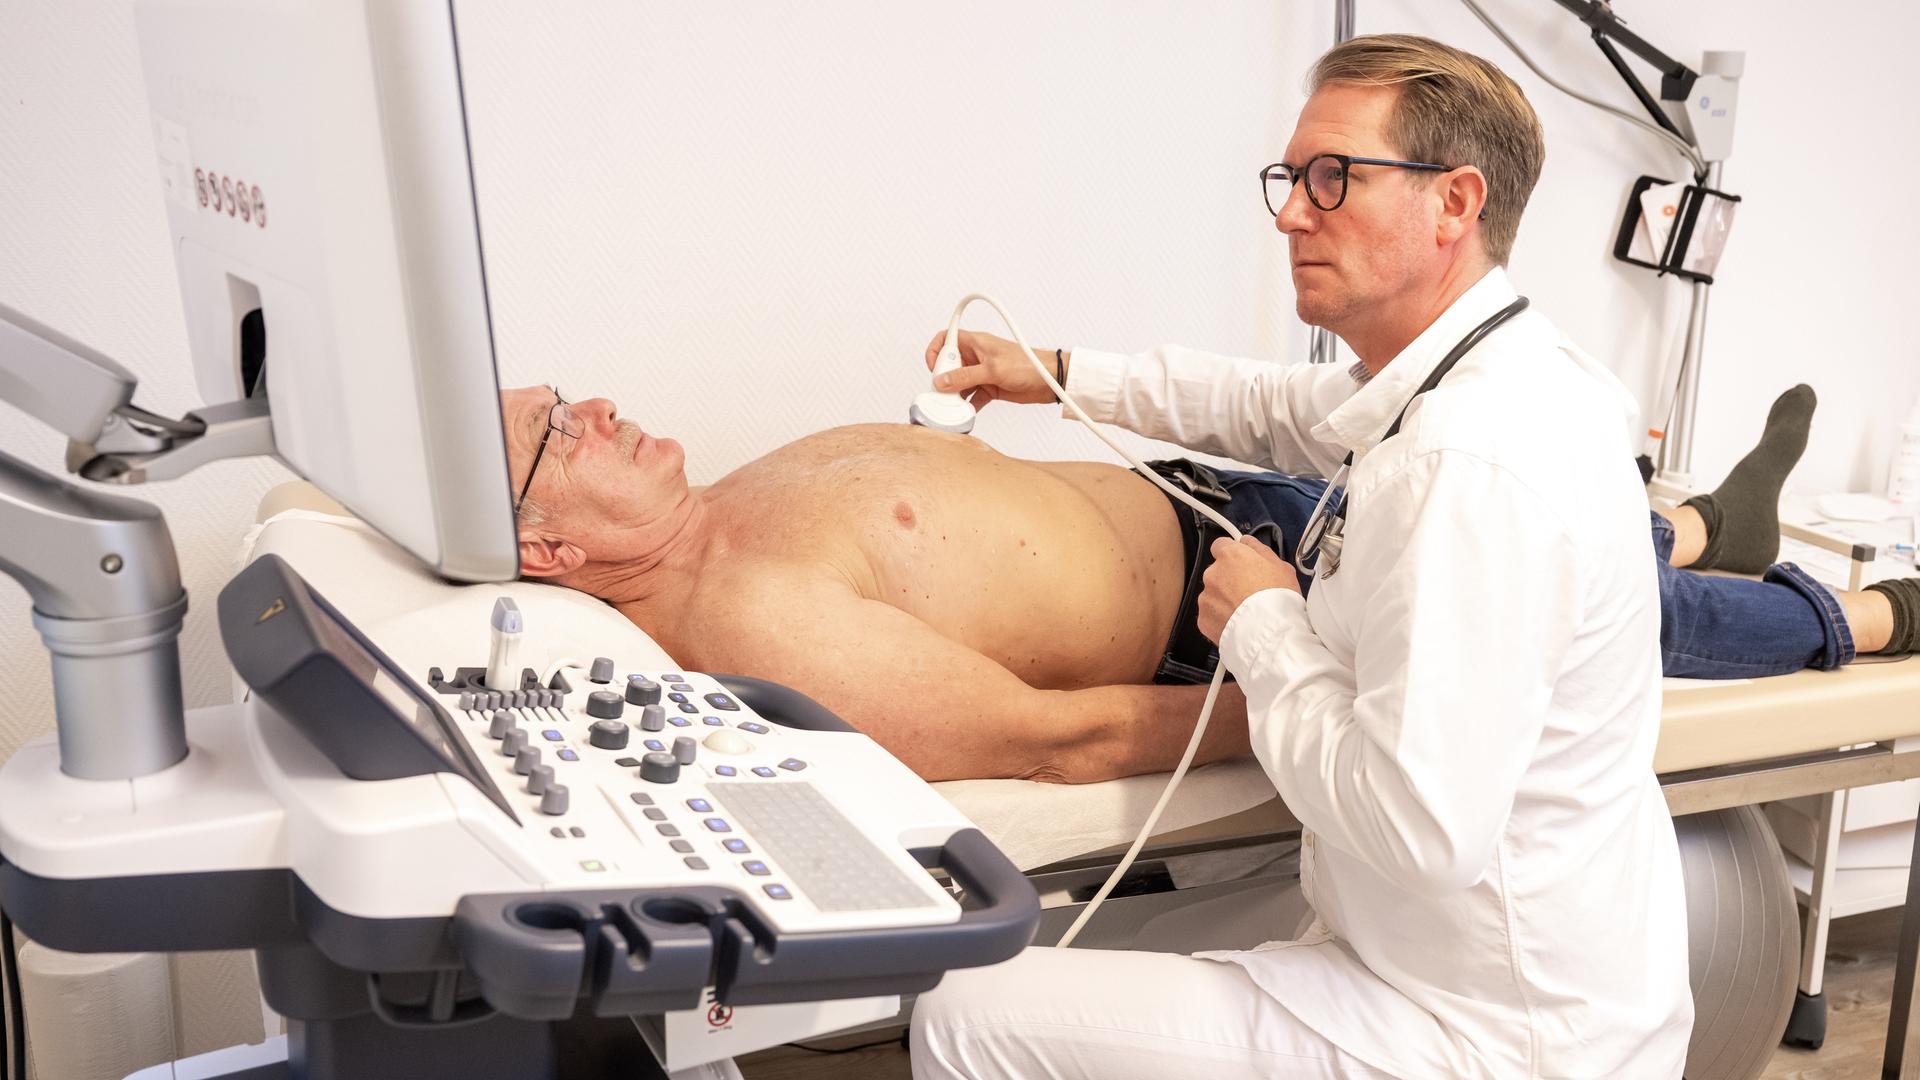 Ein Hausarzt hält ein Ultraschallgerät auf den Bauch eines älteren, oberkörperfreien Patienten. Dabei schaut der Arzt in den Monitor vor sich.